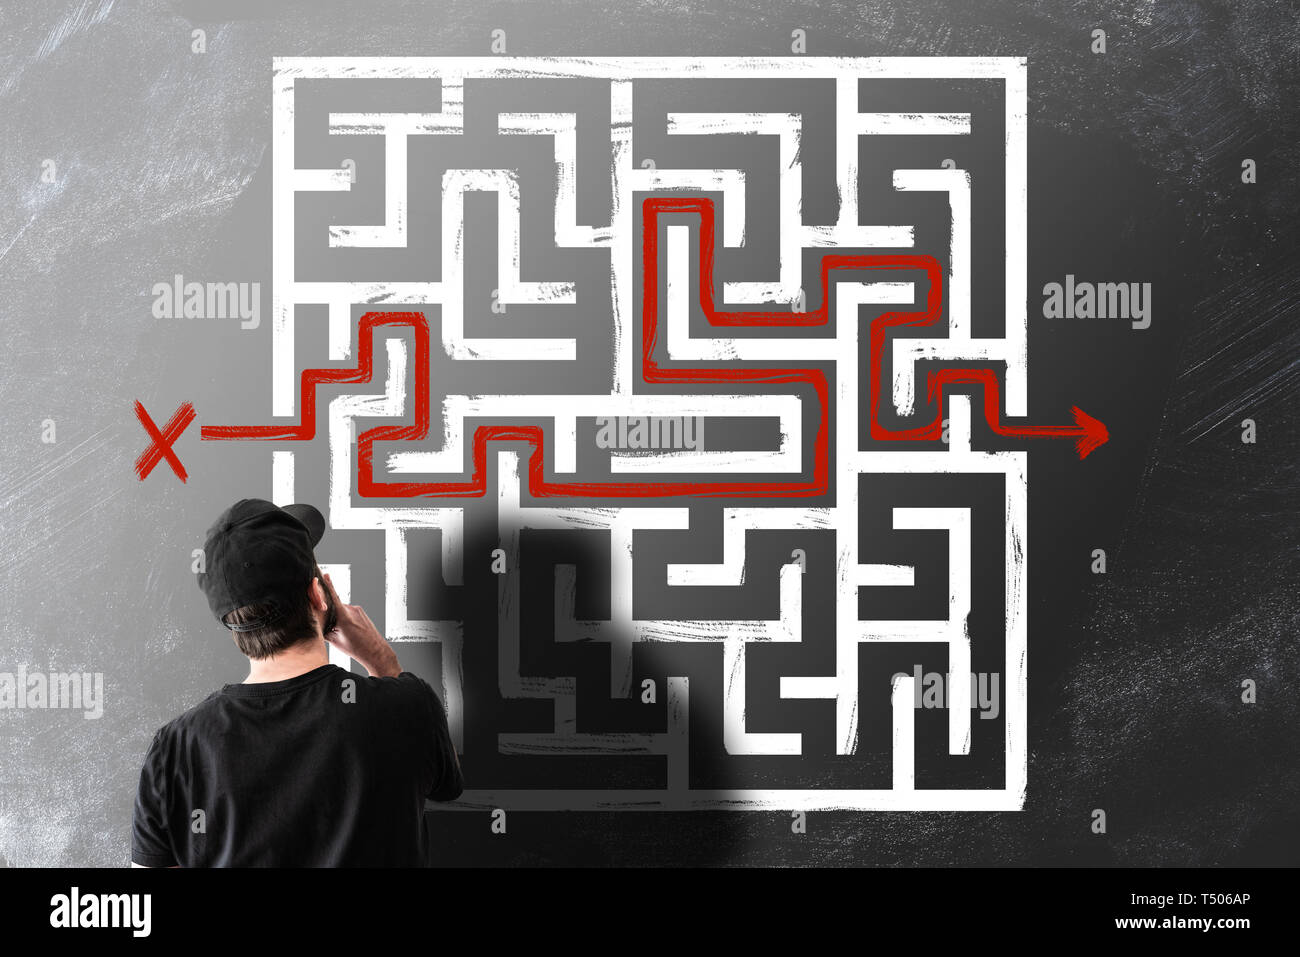 Rückansicht des Menschen betrachten Kreidezeichnung von Labyrinth Labyrinth auf der Tafel Stockfoto